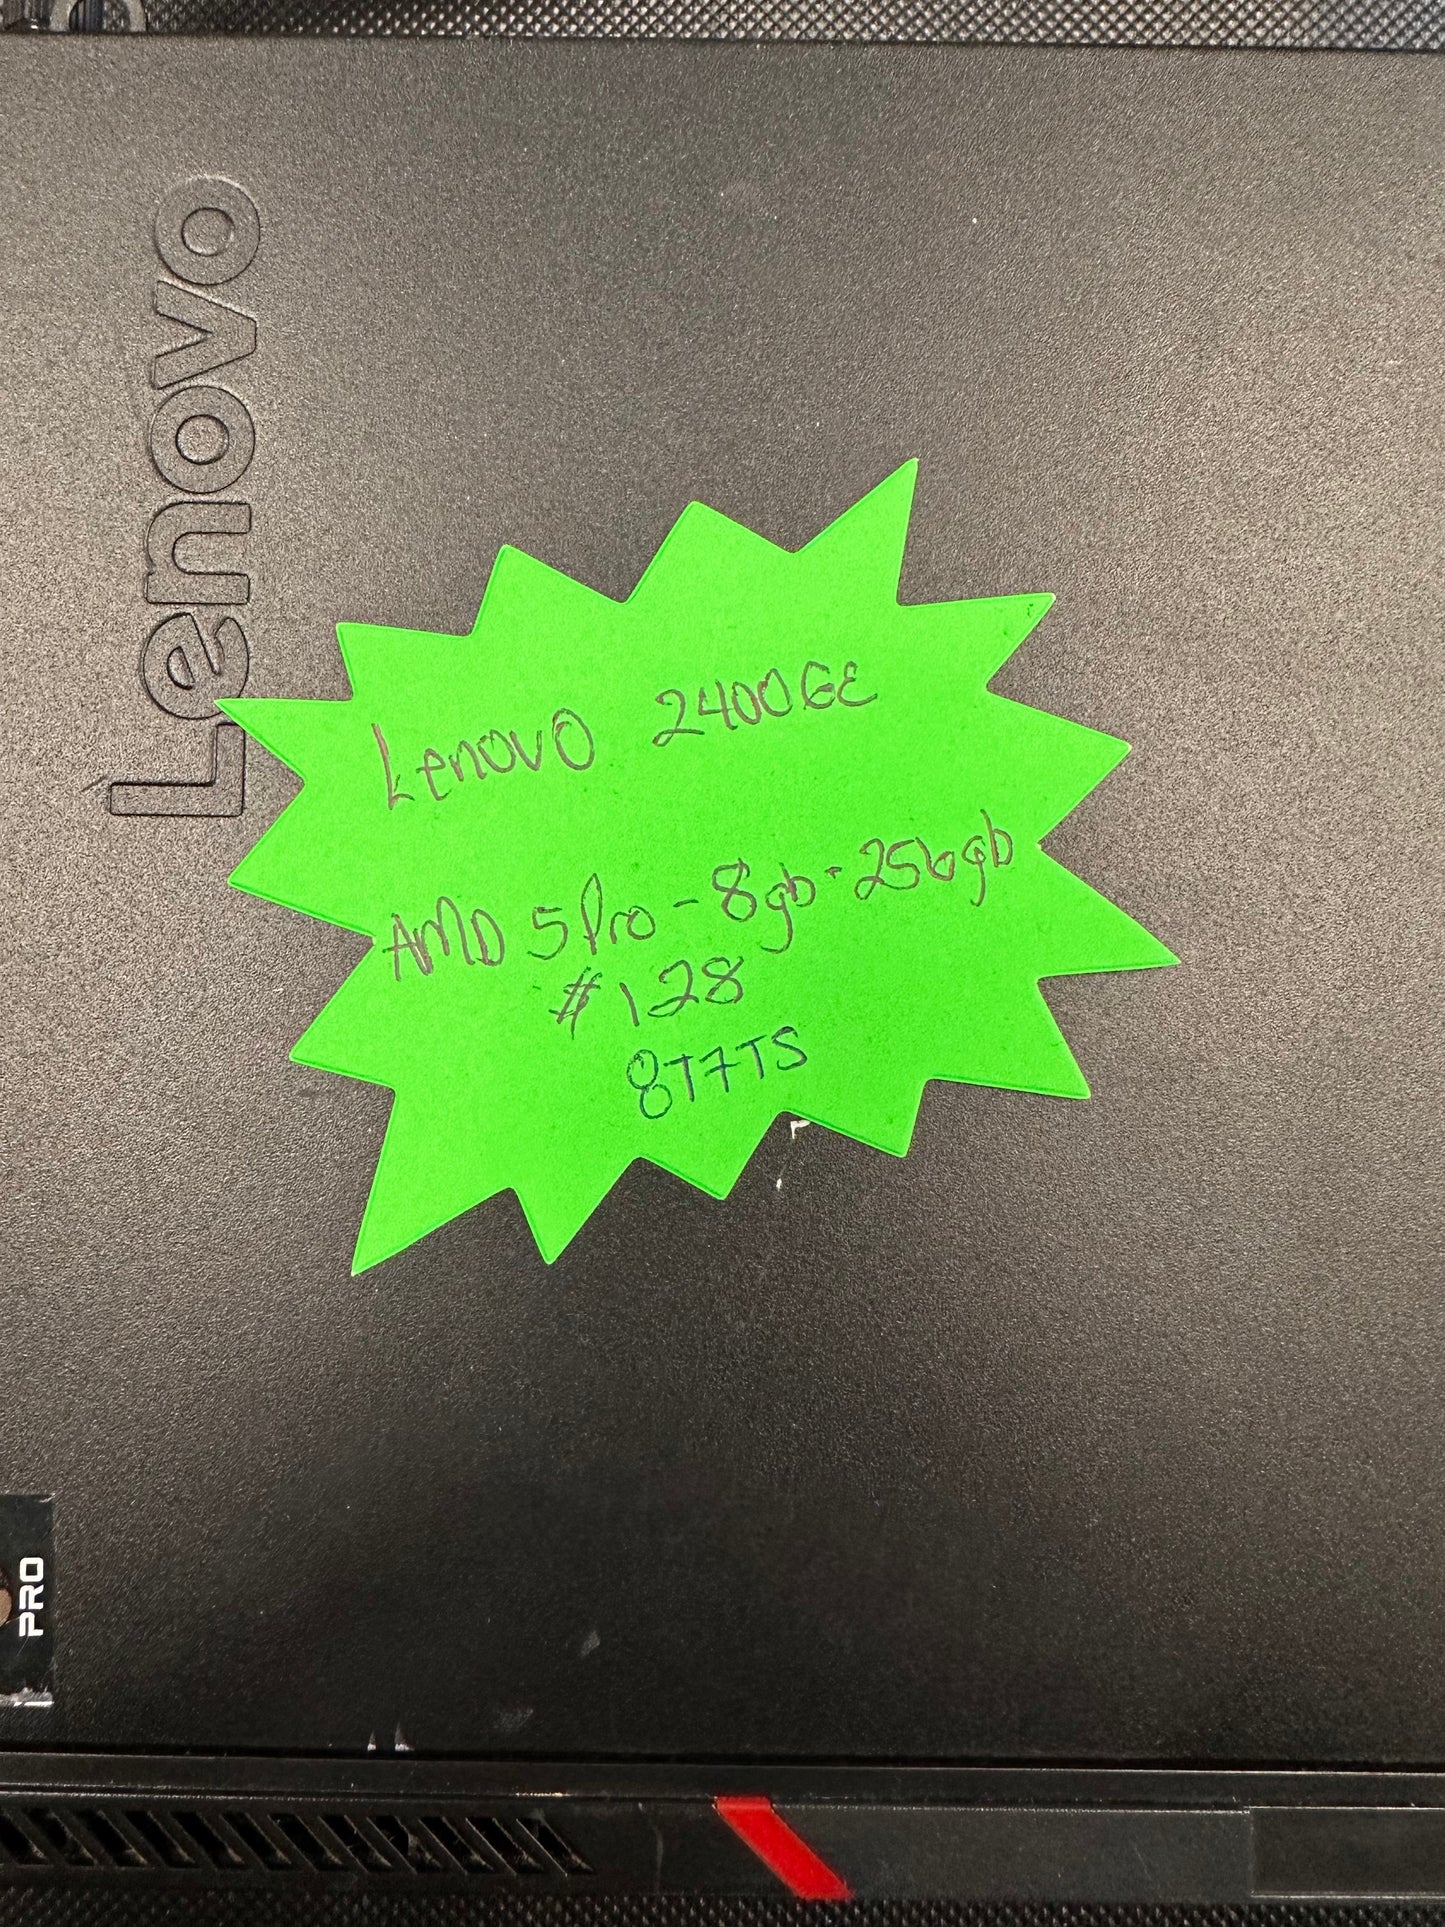 Lenovo 2400GE | AMD 5 Pro | 8GB | 256GB |